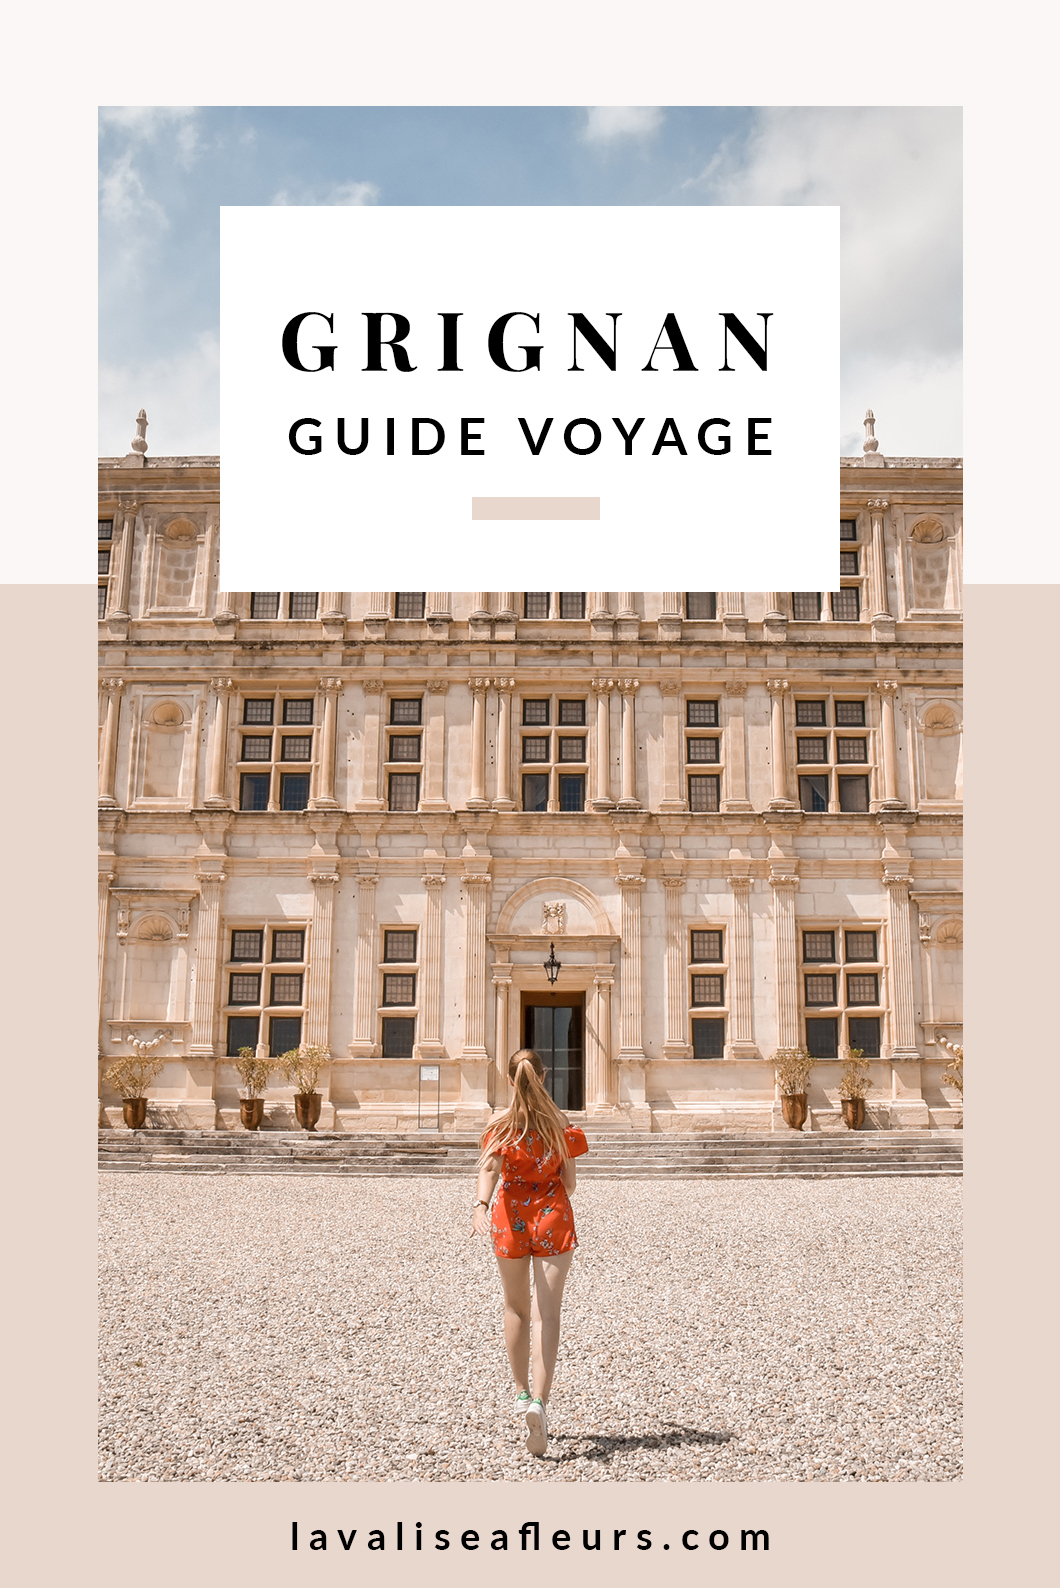 Que visiter à Grignan ? Guide voyage